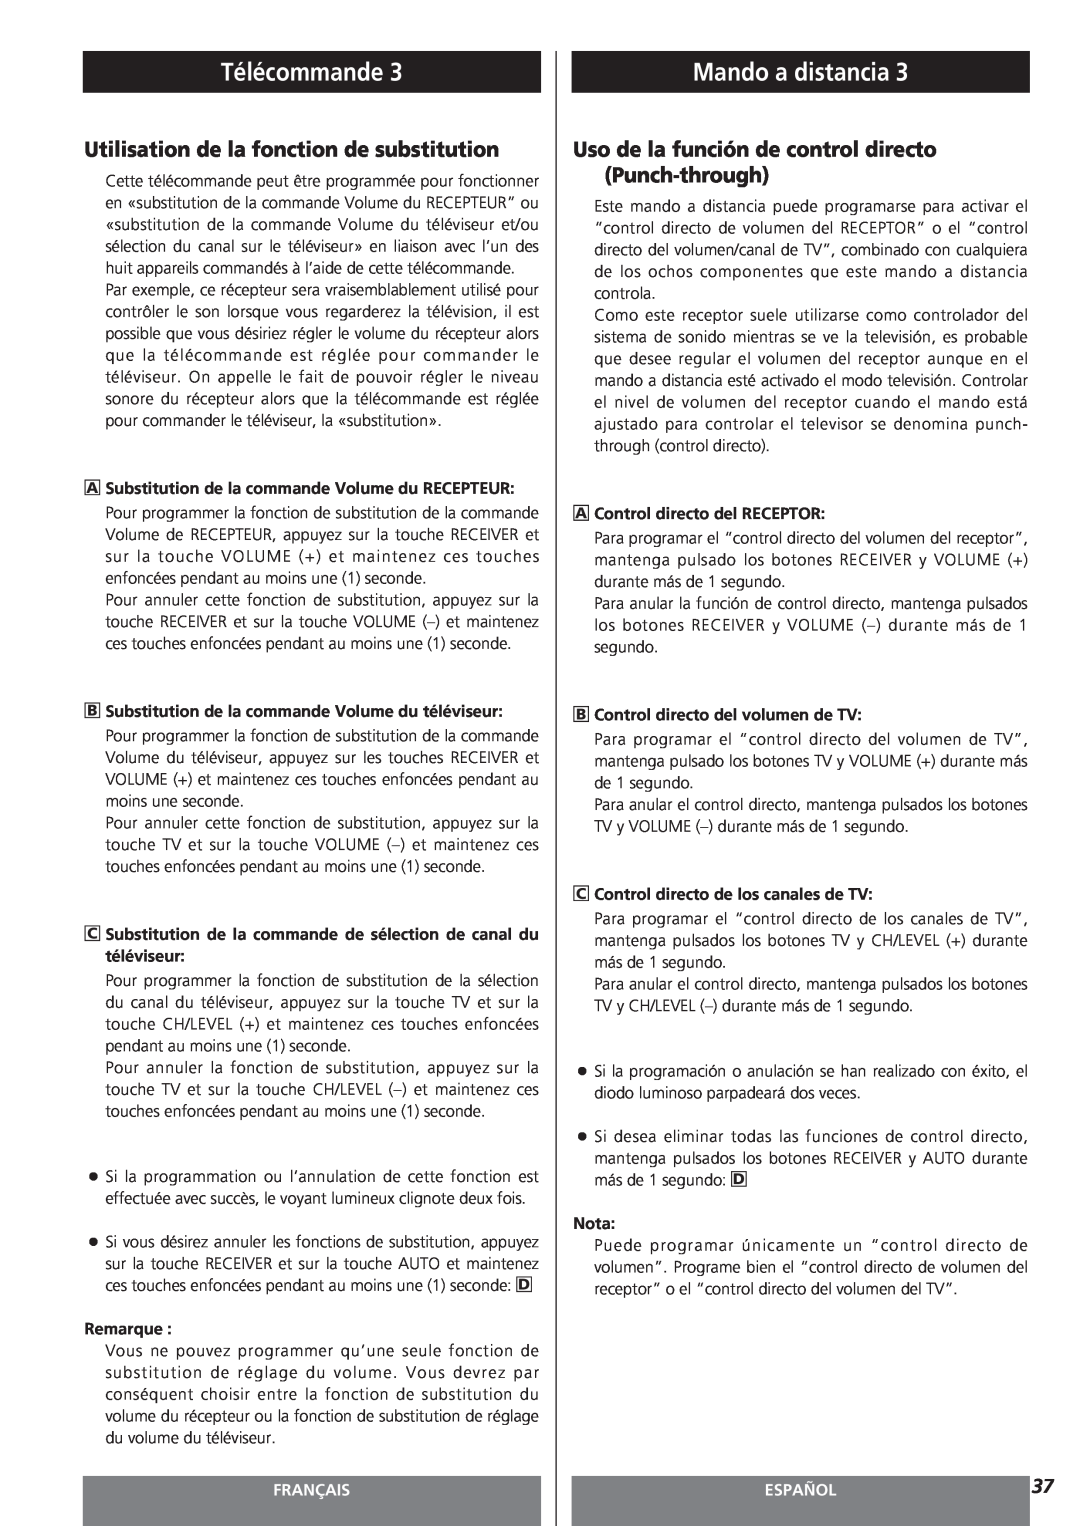 Teac AG-15D owner manual Utilisation de la fonction de substitution, Télécommande, Mando a distancia, Français, Español 